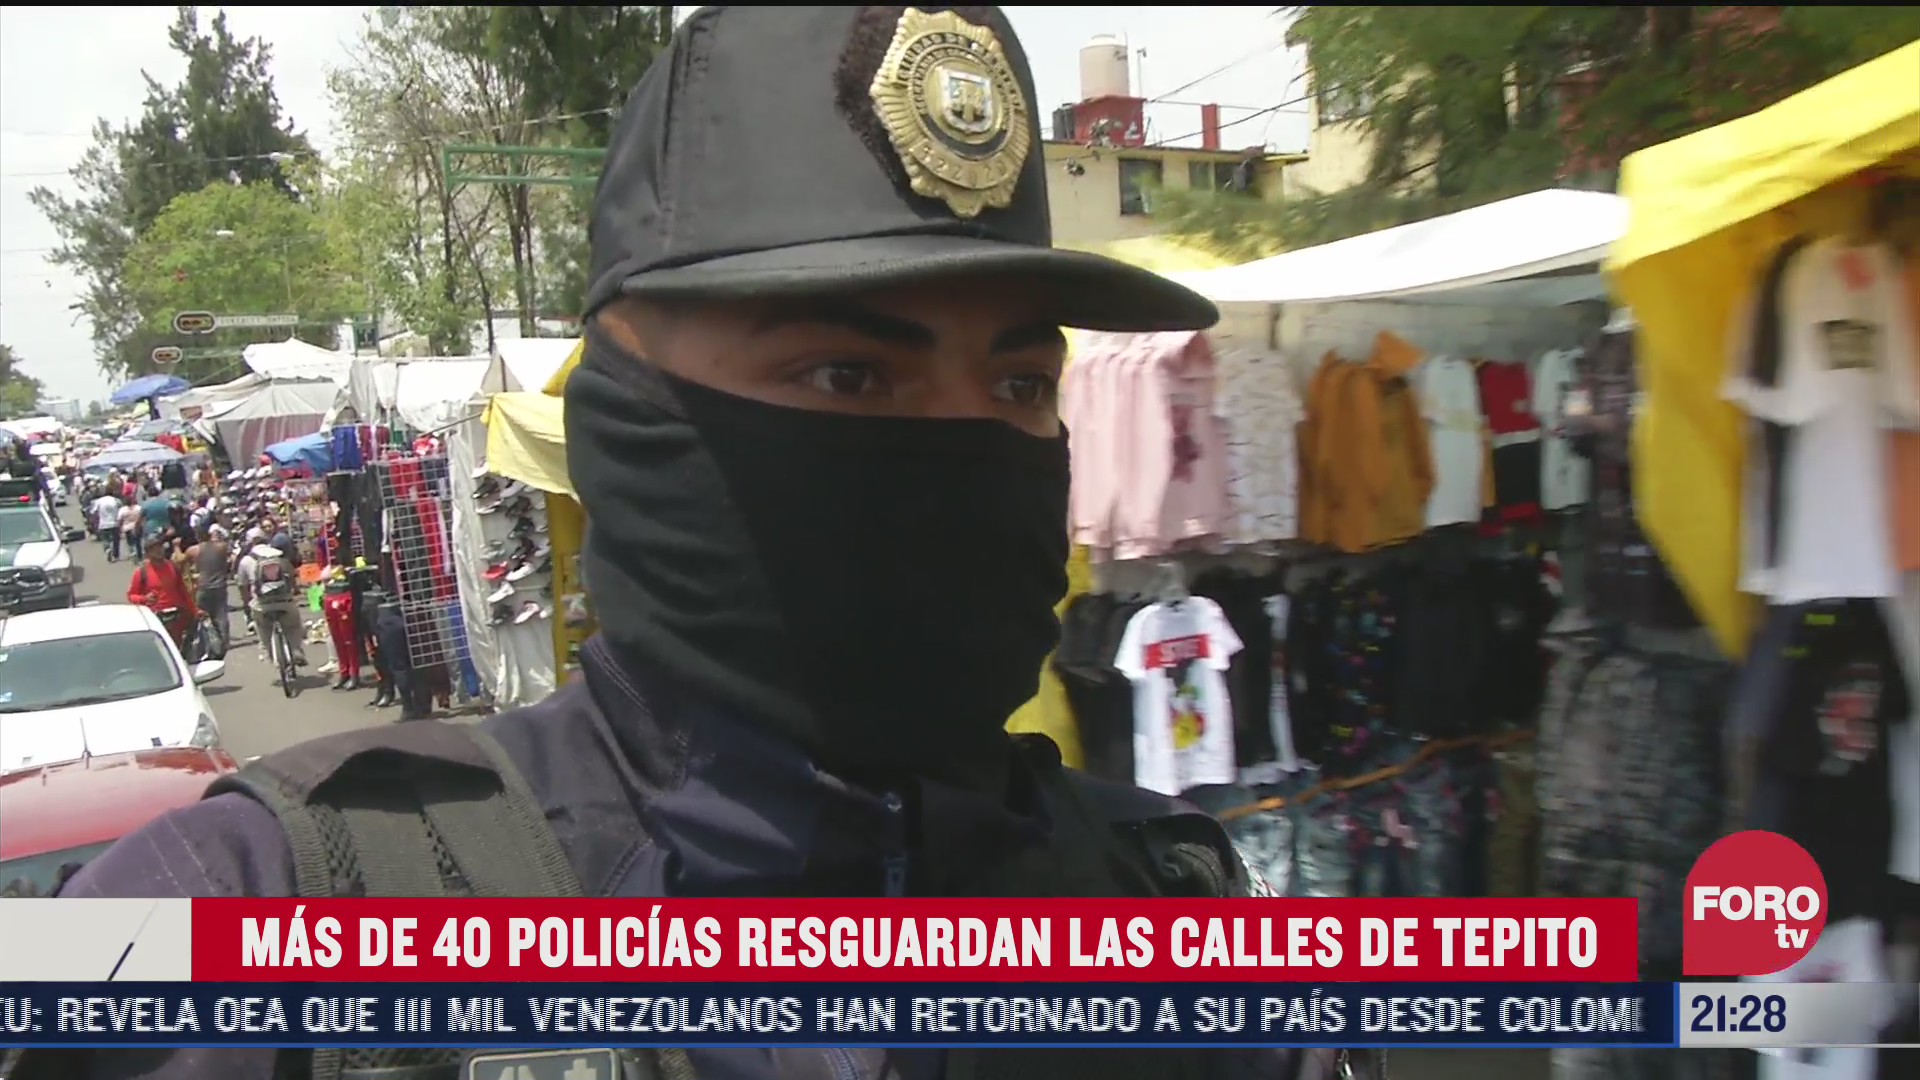 unos 40 policias vigilan las calles del barrio de tepito